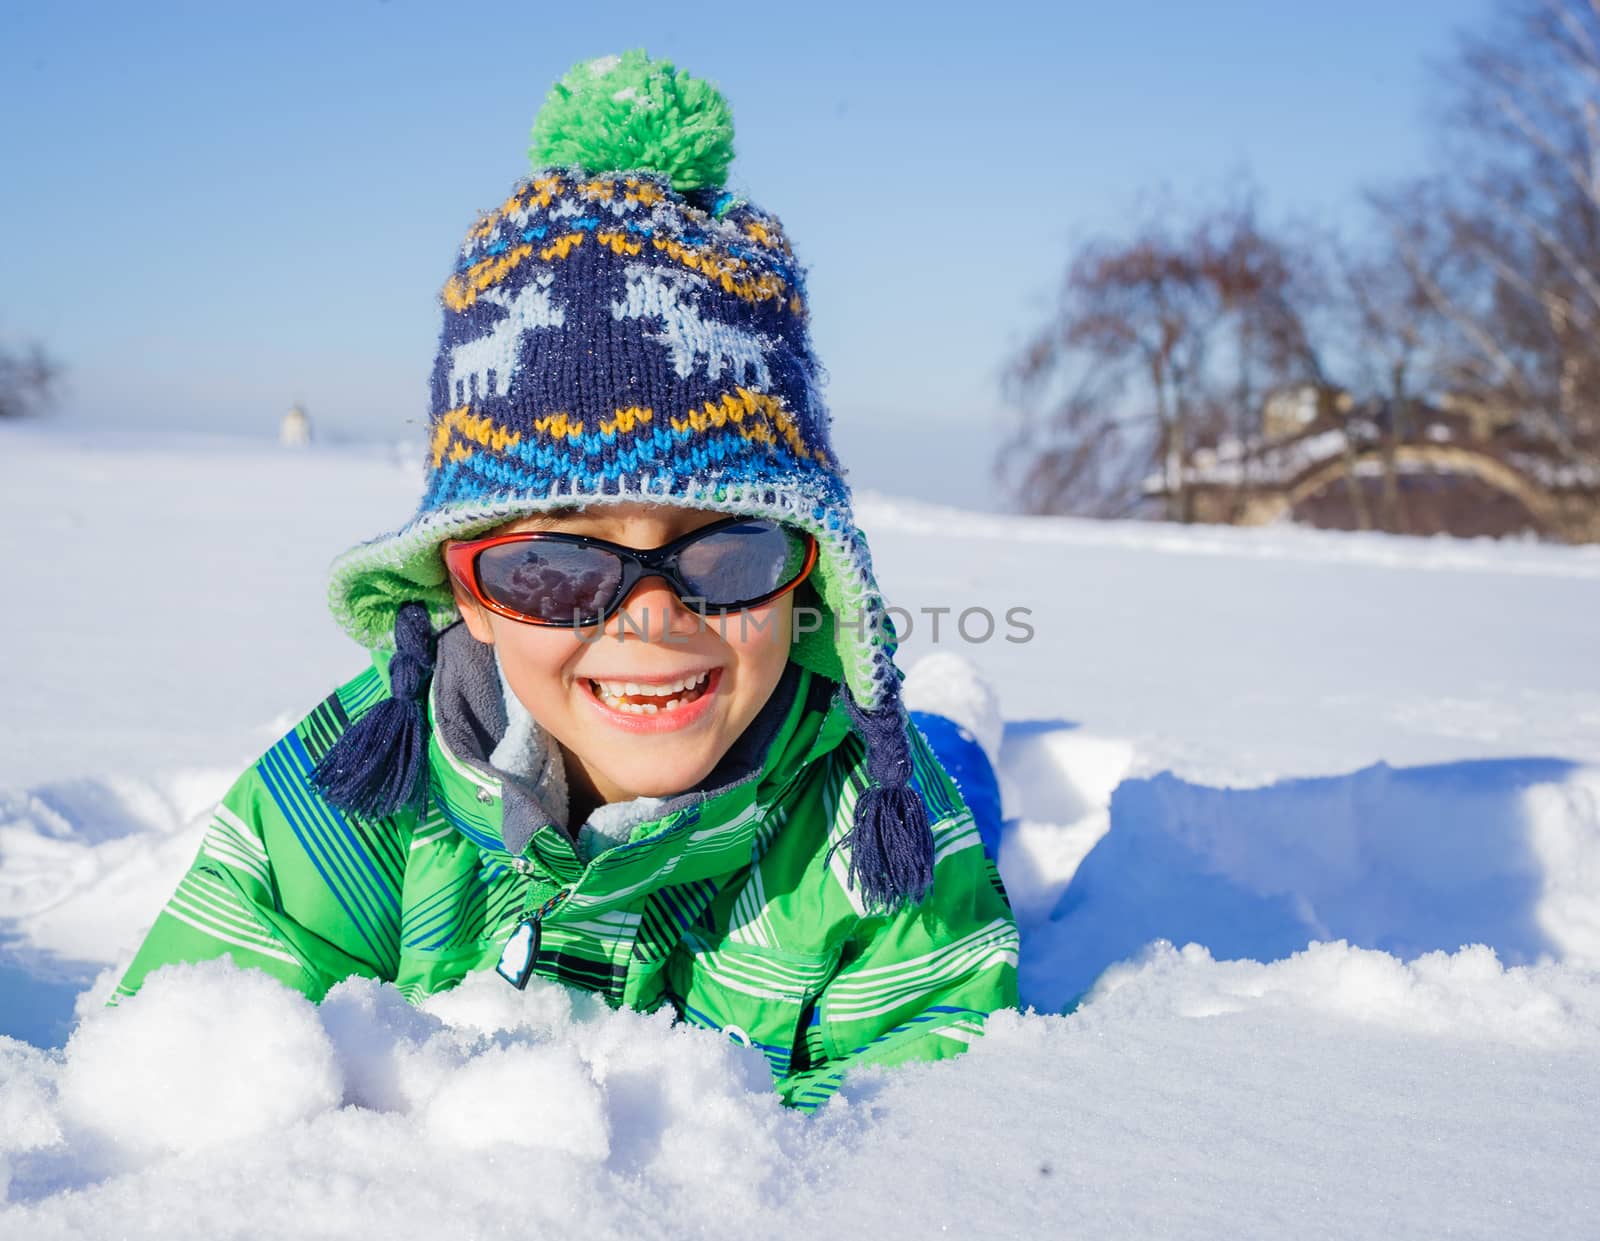 Winter, play, fun - Cute little boy having fun in winter park